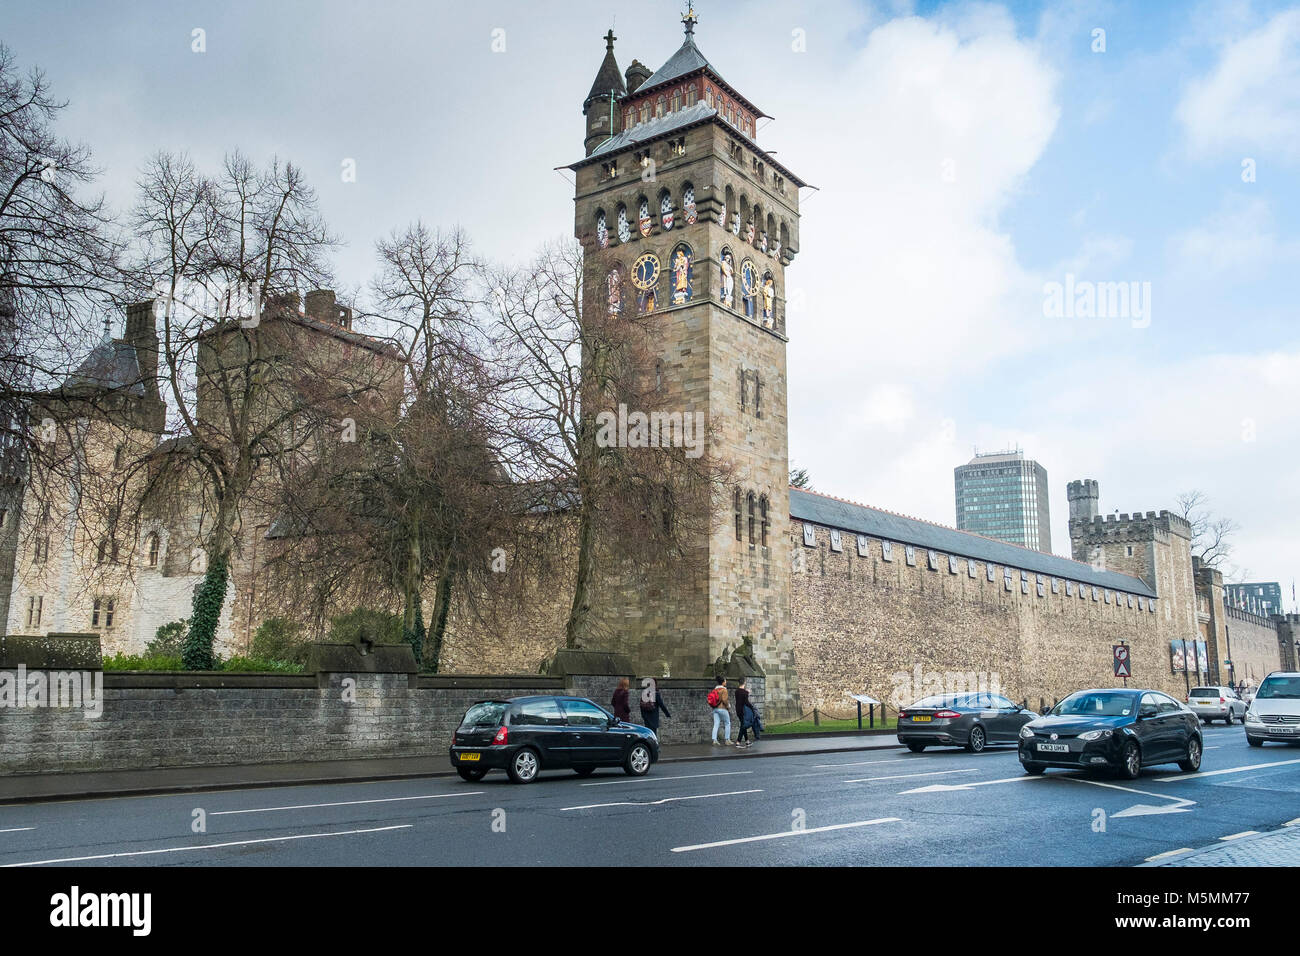 La Torre dell'orologio del Castello di Cardiff nel centro di Cardiff in Galles. Foto Stock